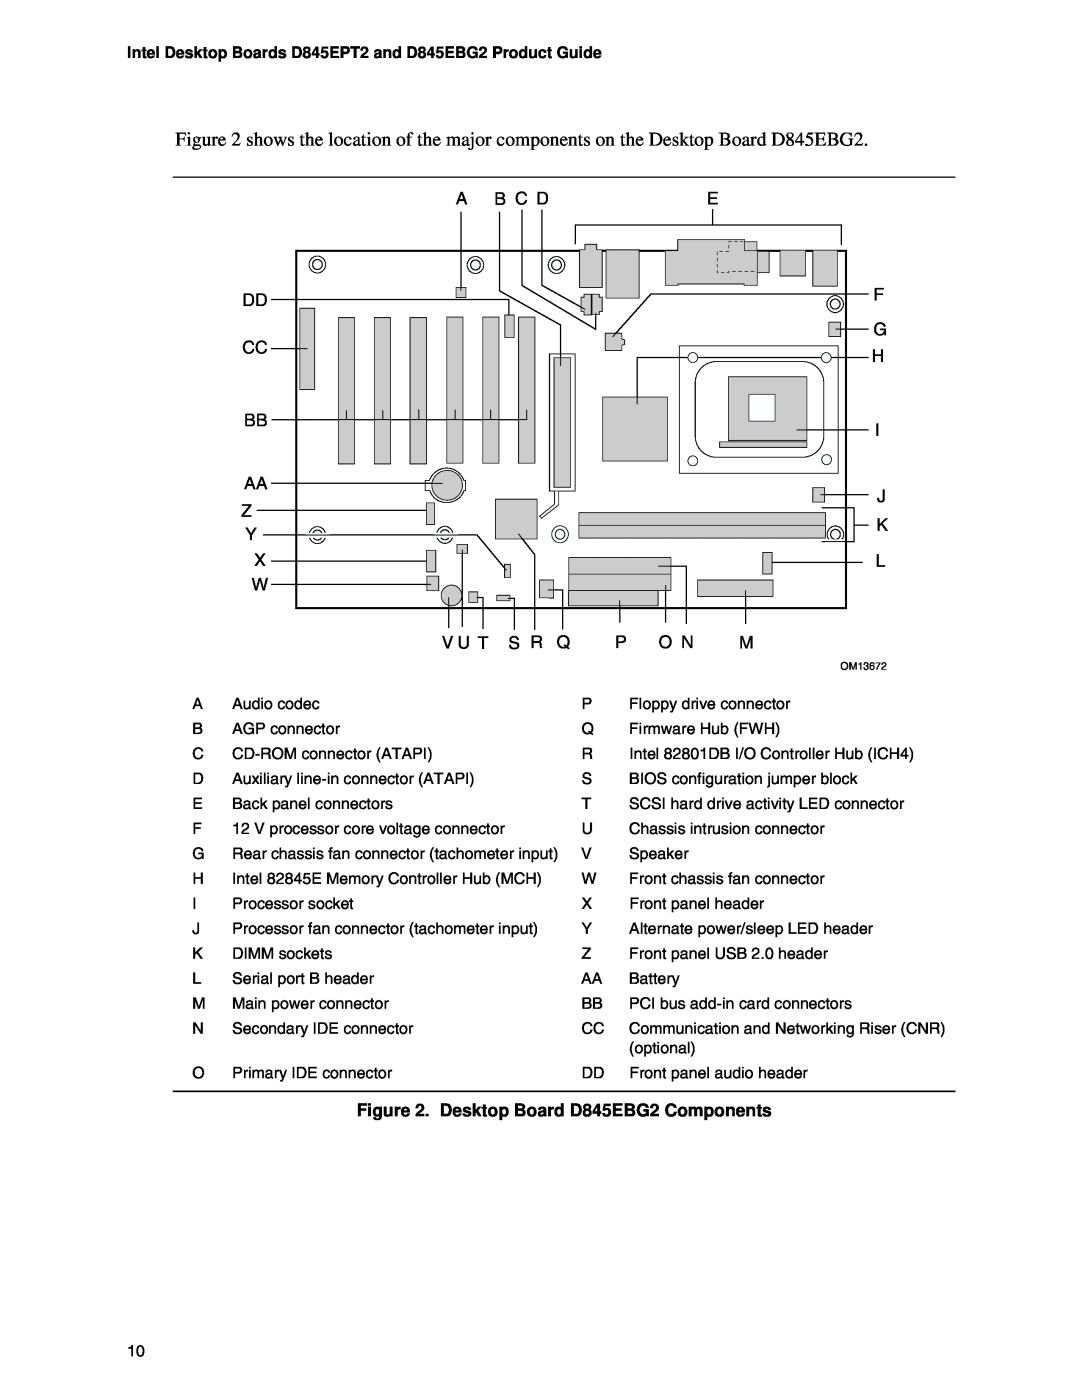 Intel D845EPT2 manual Desktop Board D845EBG2 Components, OM13672 